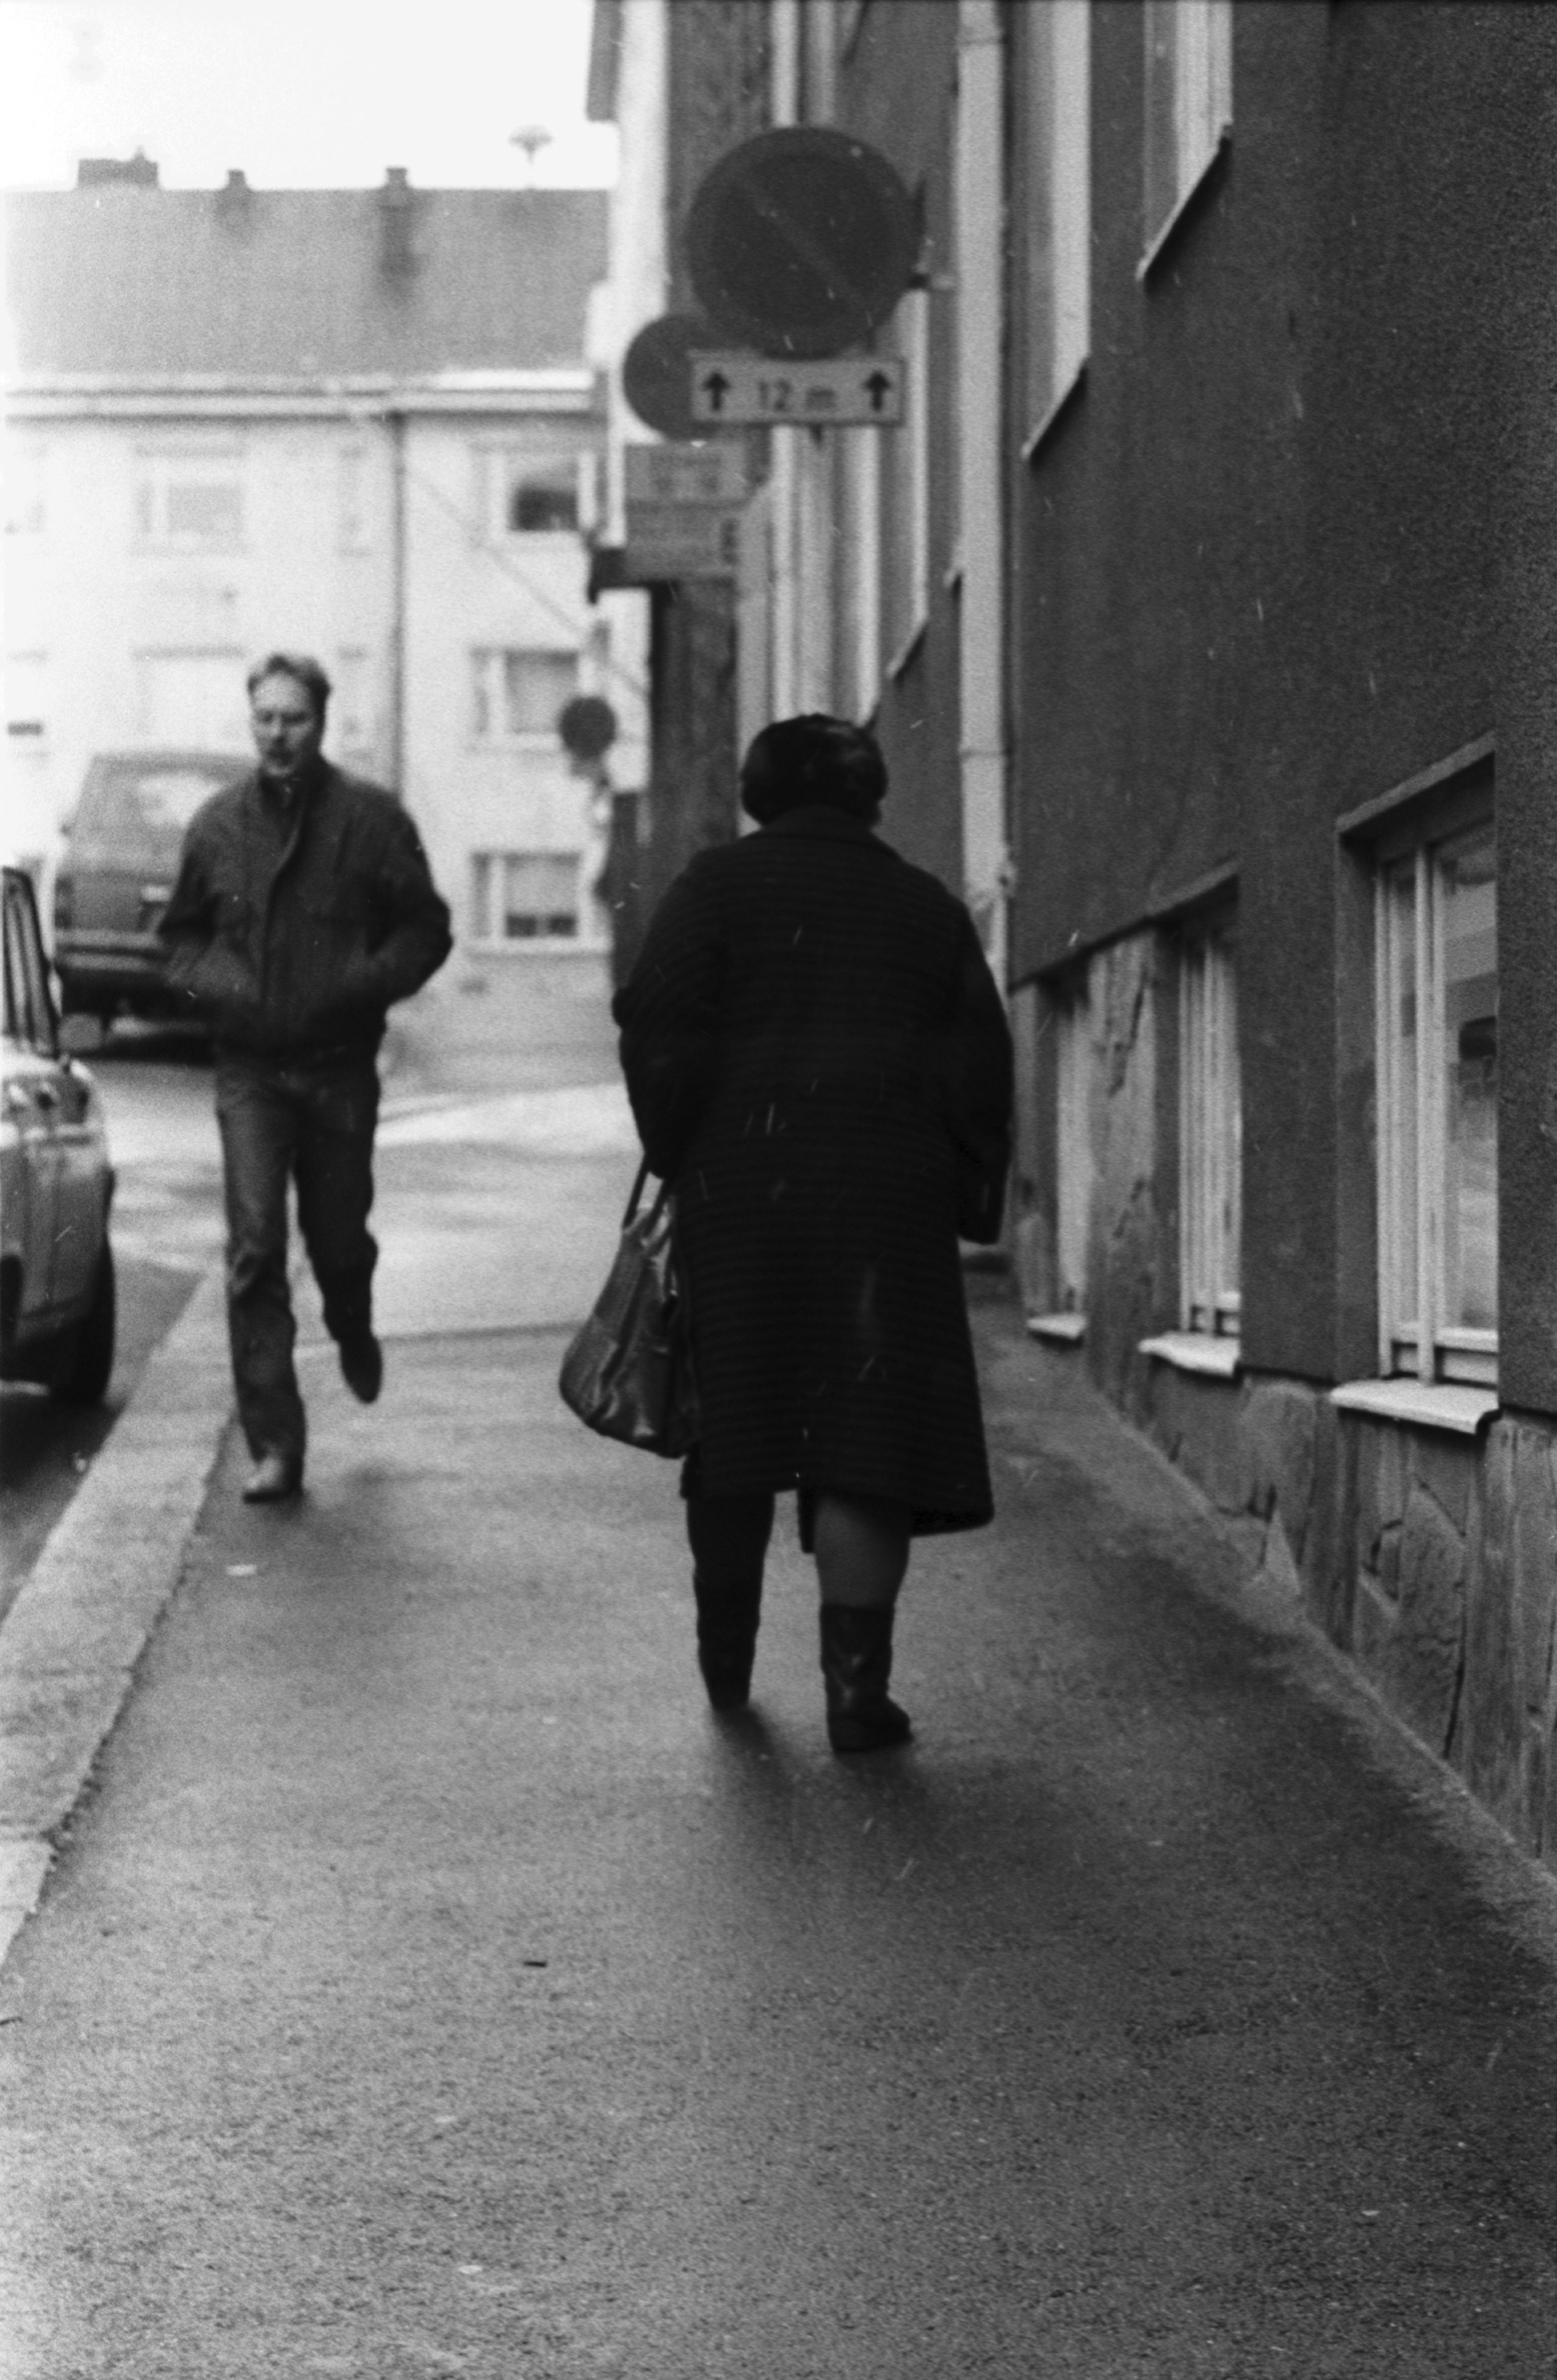 Kulmakatu 3b. Mies ja nainen kävelemässä Kulmakatu 3b:n edessä alkutalven kevyessä räntäsateessa. Näkymä Kristianinkadun suuntaan.